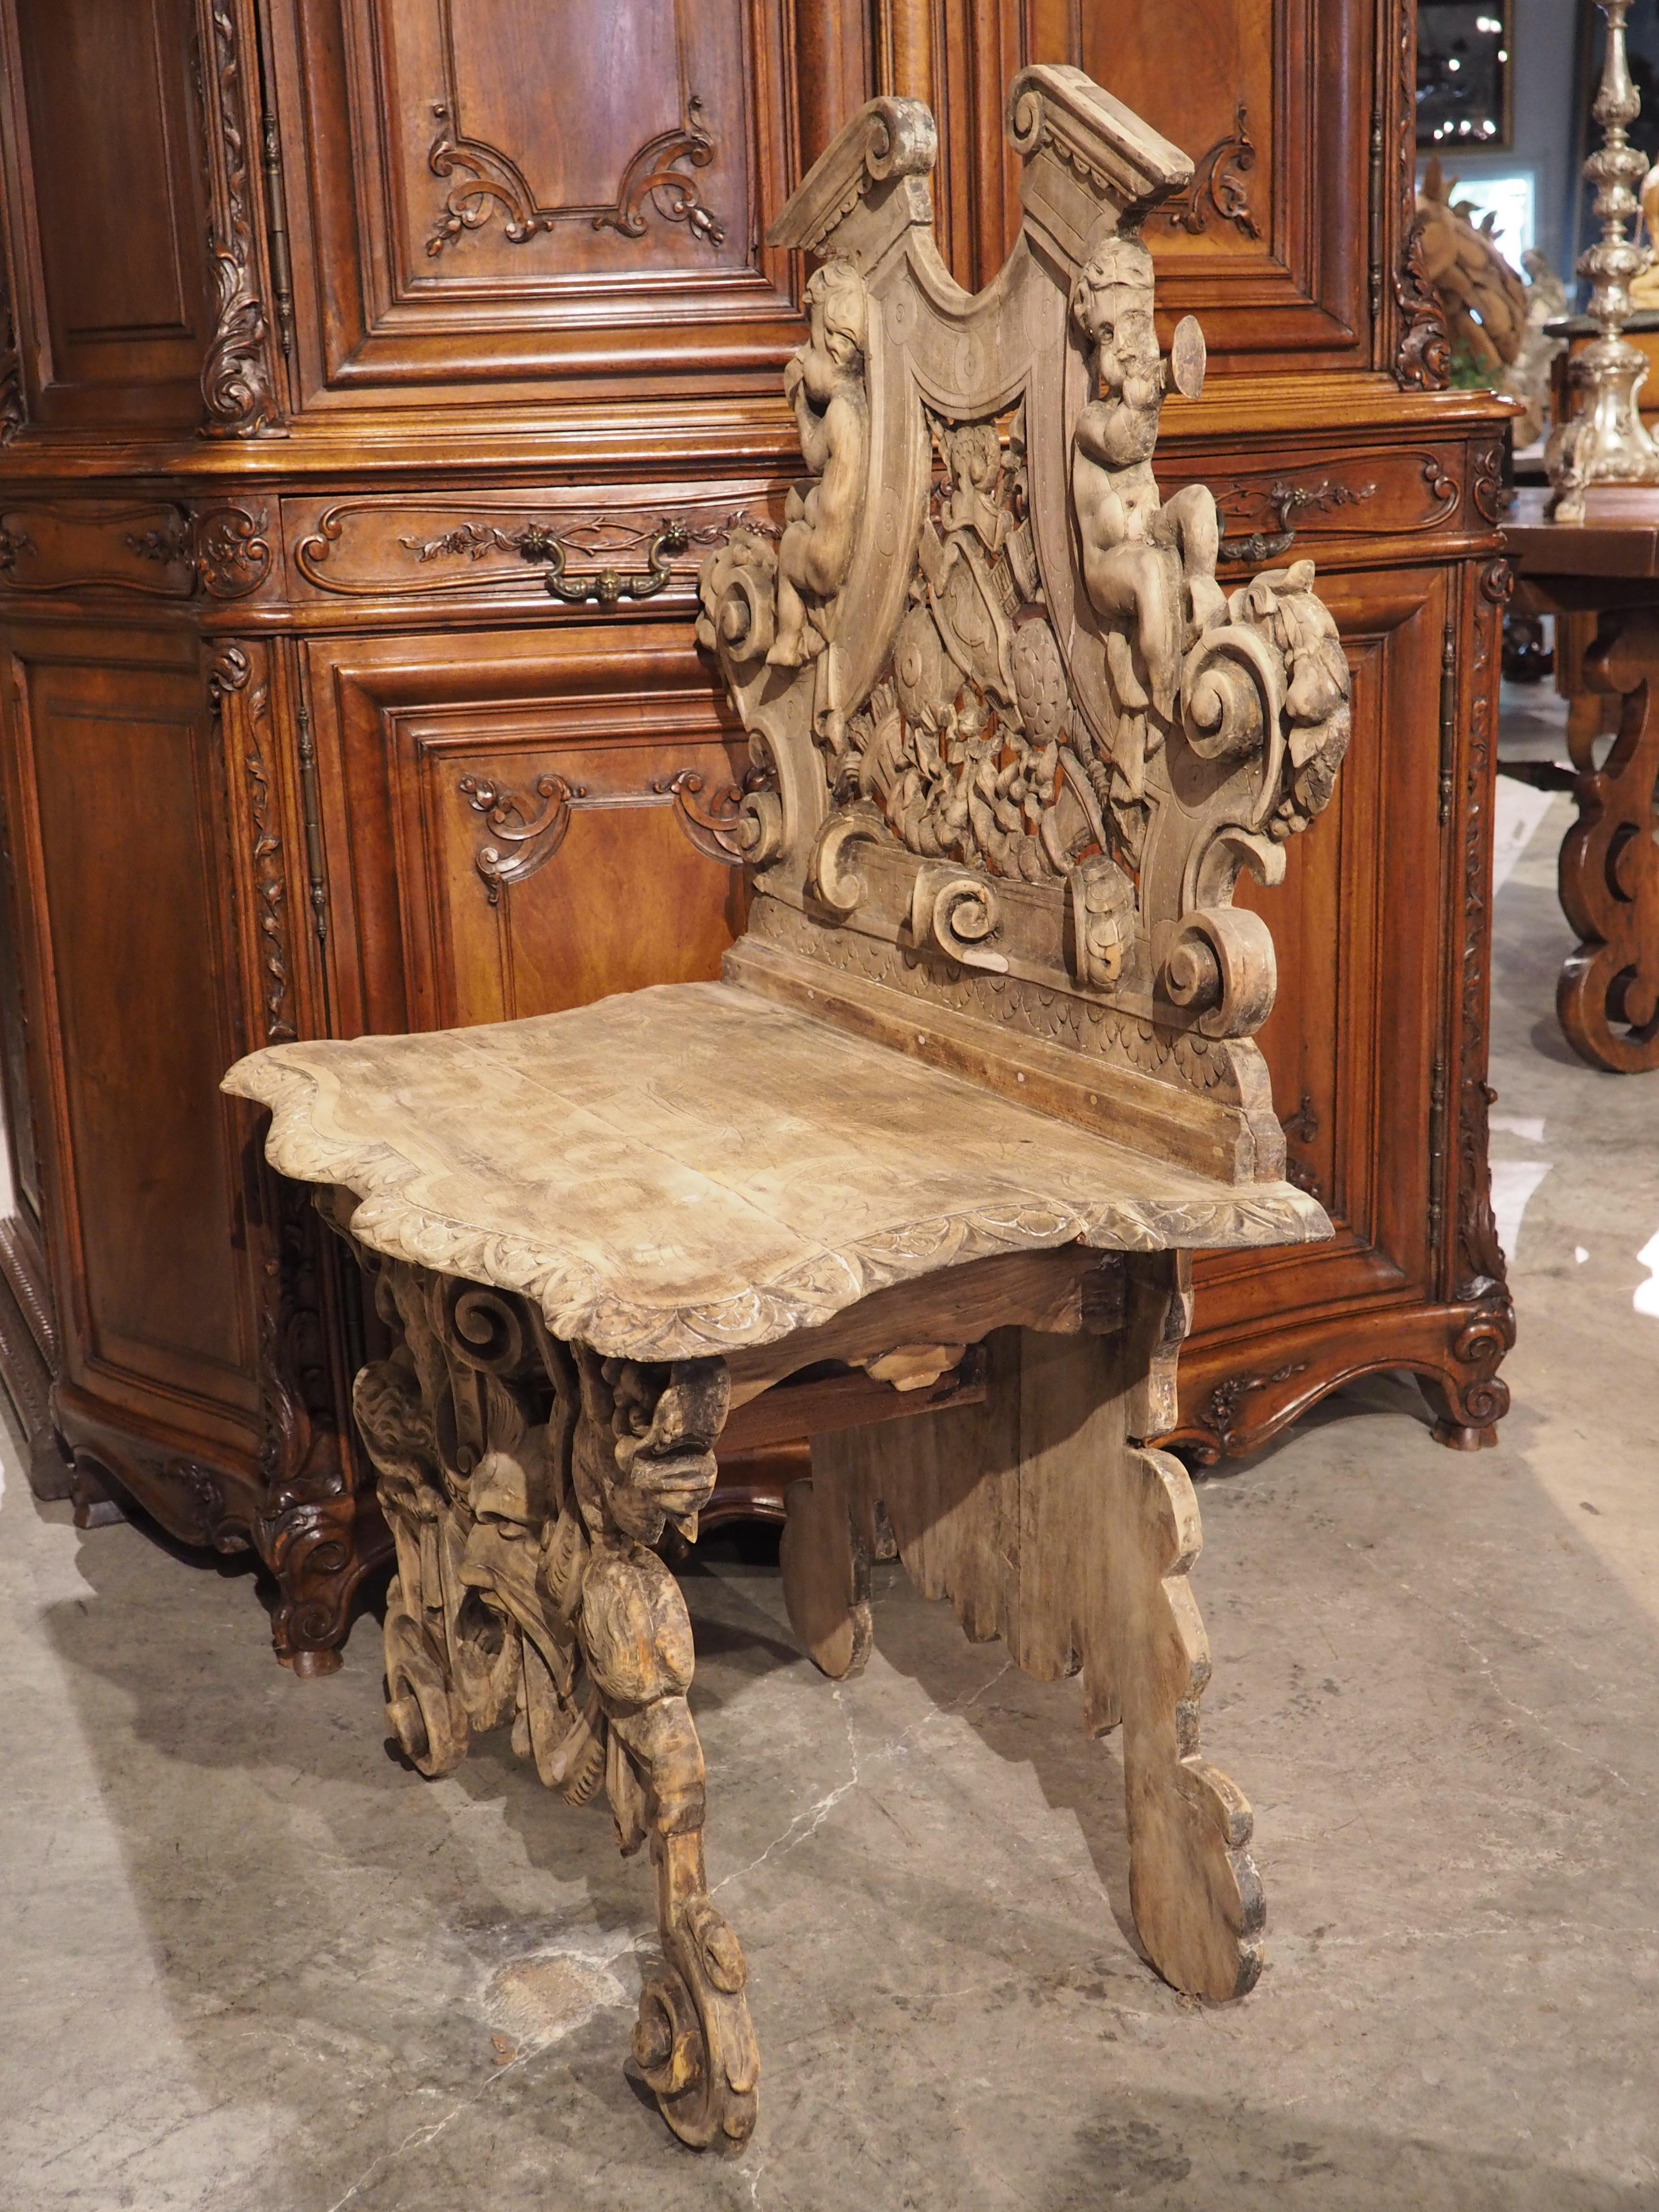 Un sgabello est une chaise italienne qui trouve son origine à la Renaissance. Conçus à l'origine pour être exposés dans un couloir (comme une chaise d'appoint française), les sgabello étaient généralement très sculptés, avec une sorte de blason